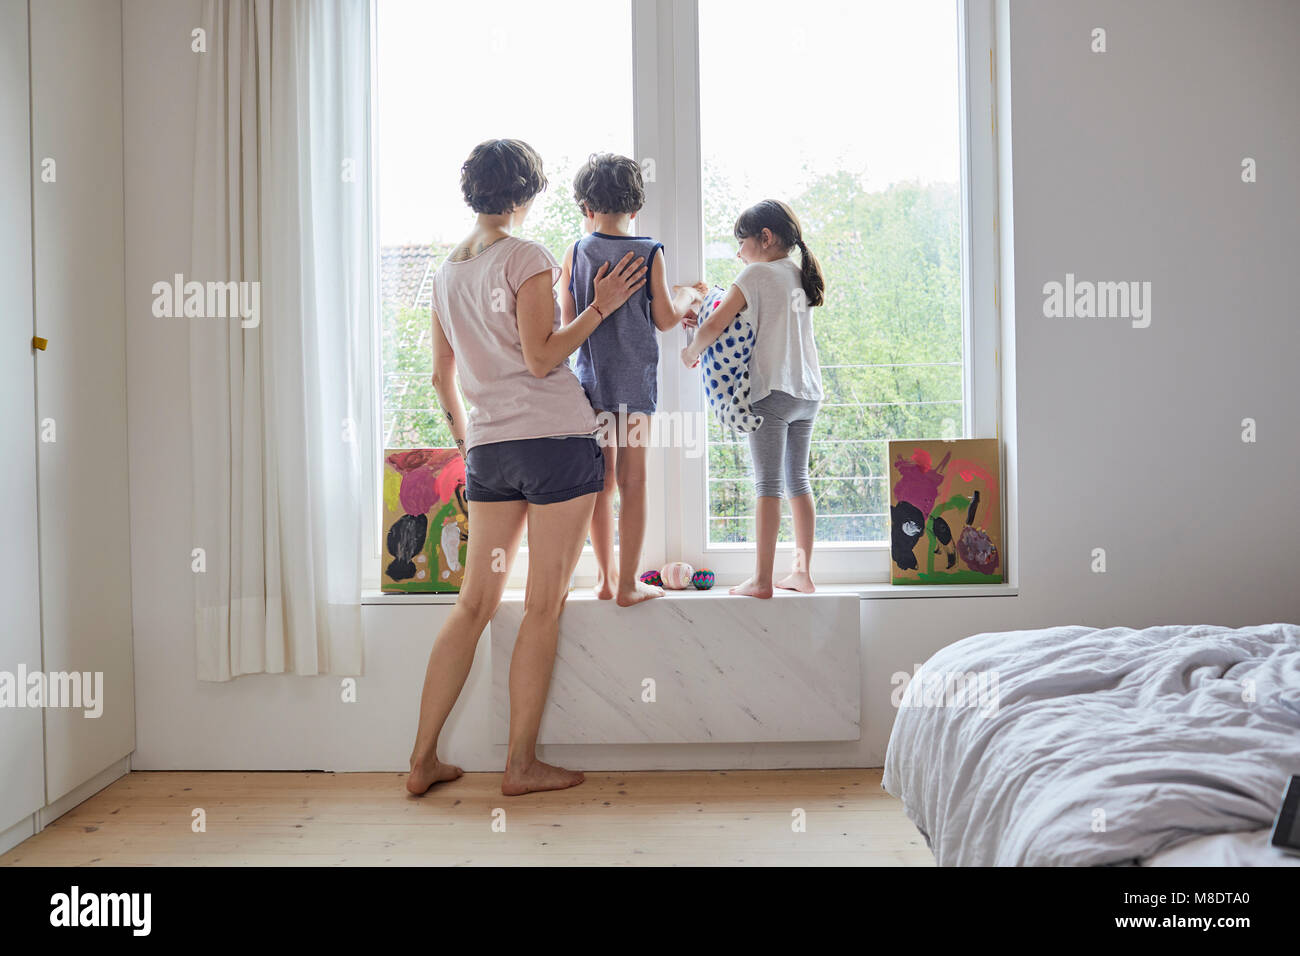 Madre, hijo e hija mirando afuera de la ventana de la habitación, vista trasera Foto de stock